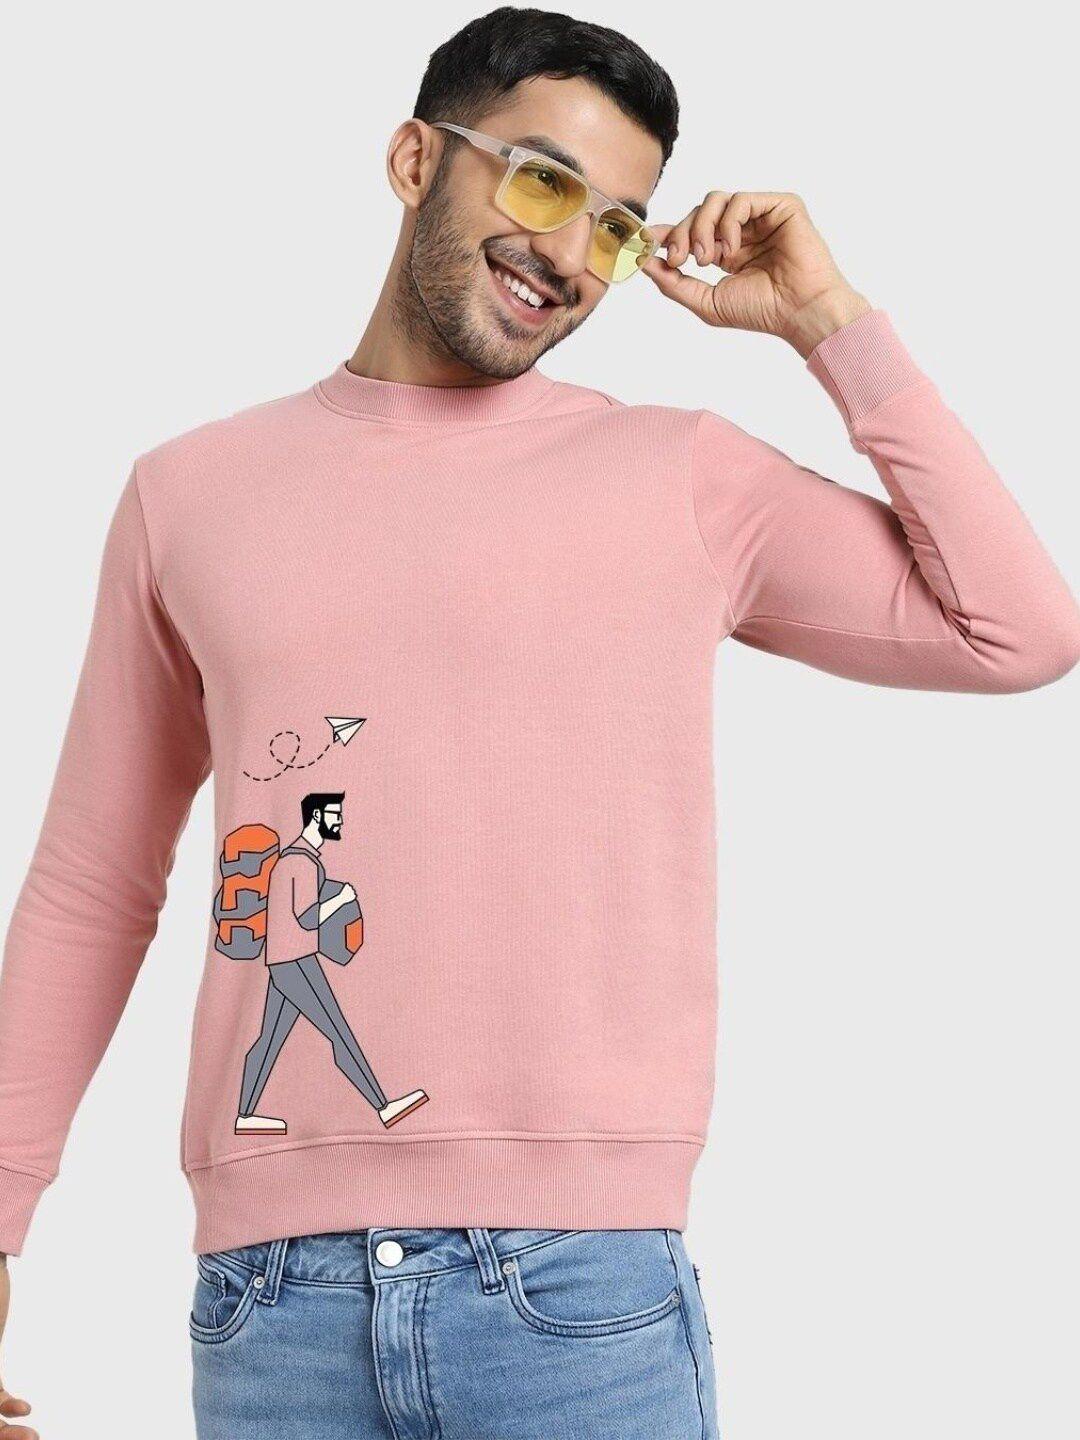 bewakoof-men-printed-fleece-sweatshirt